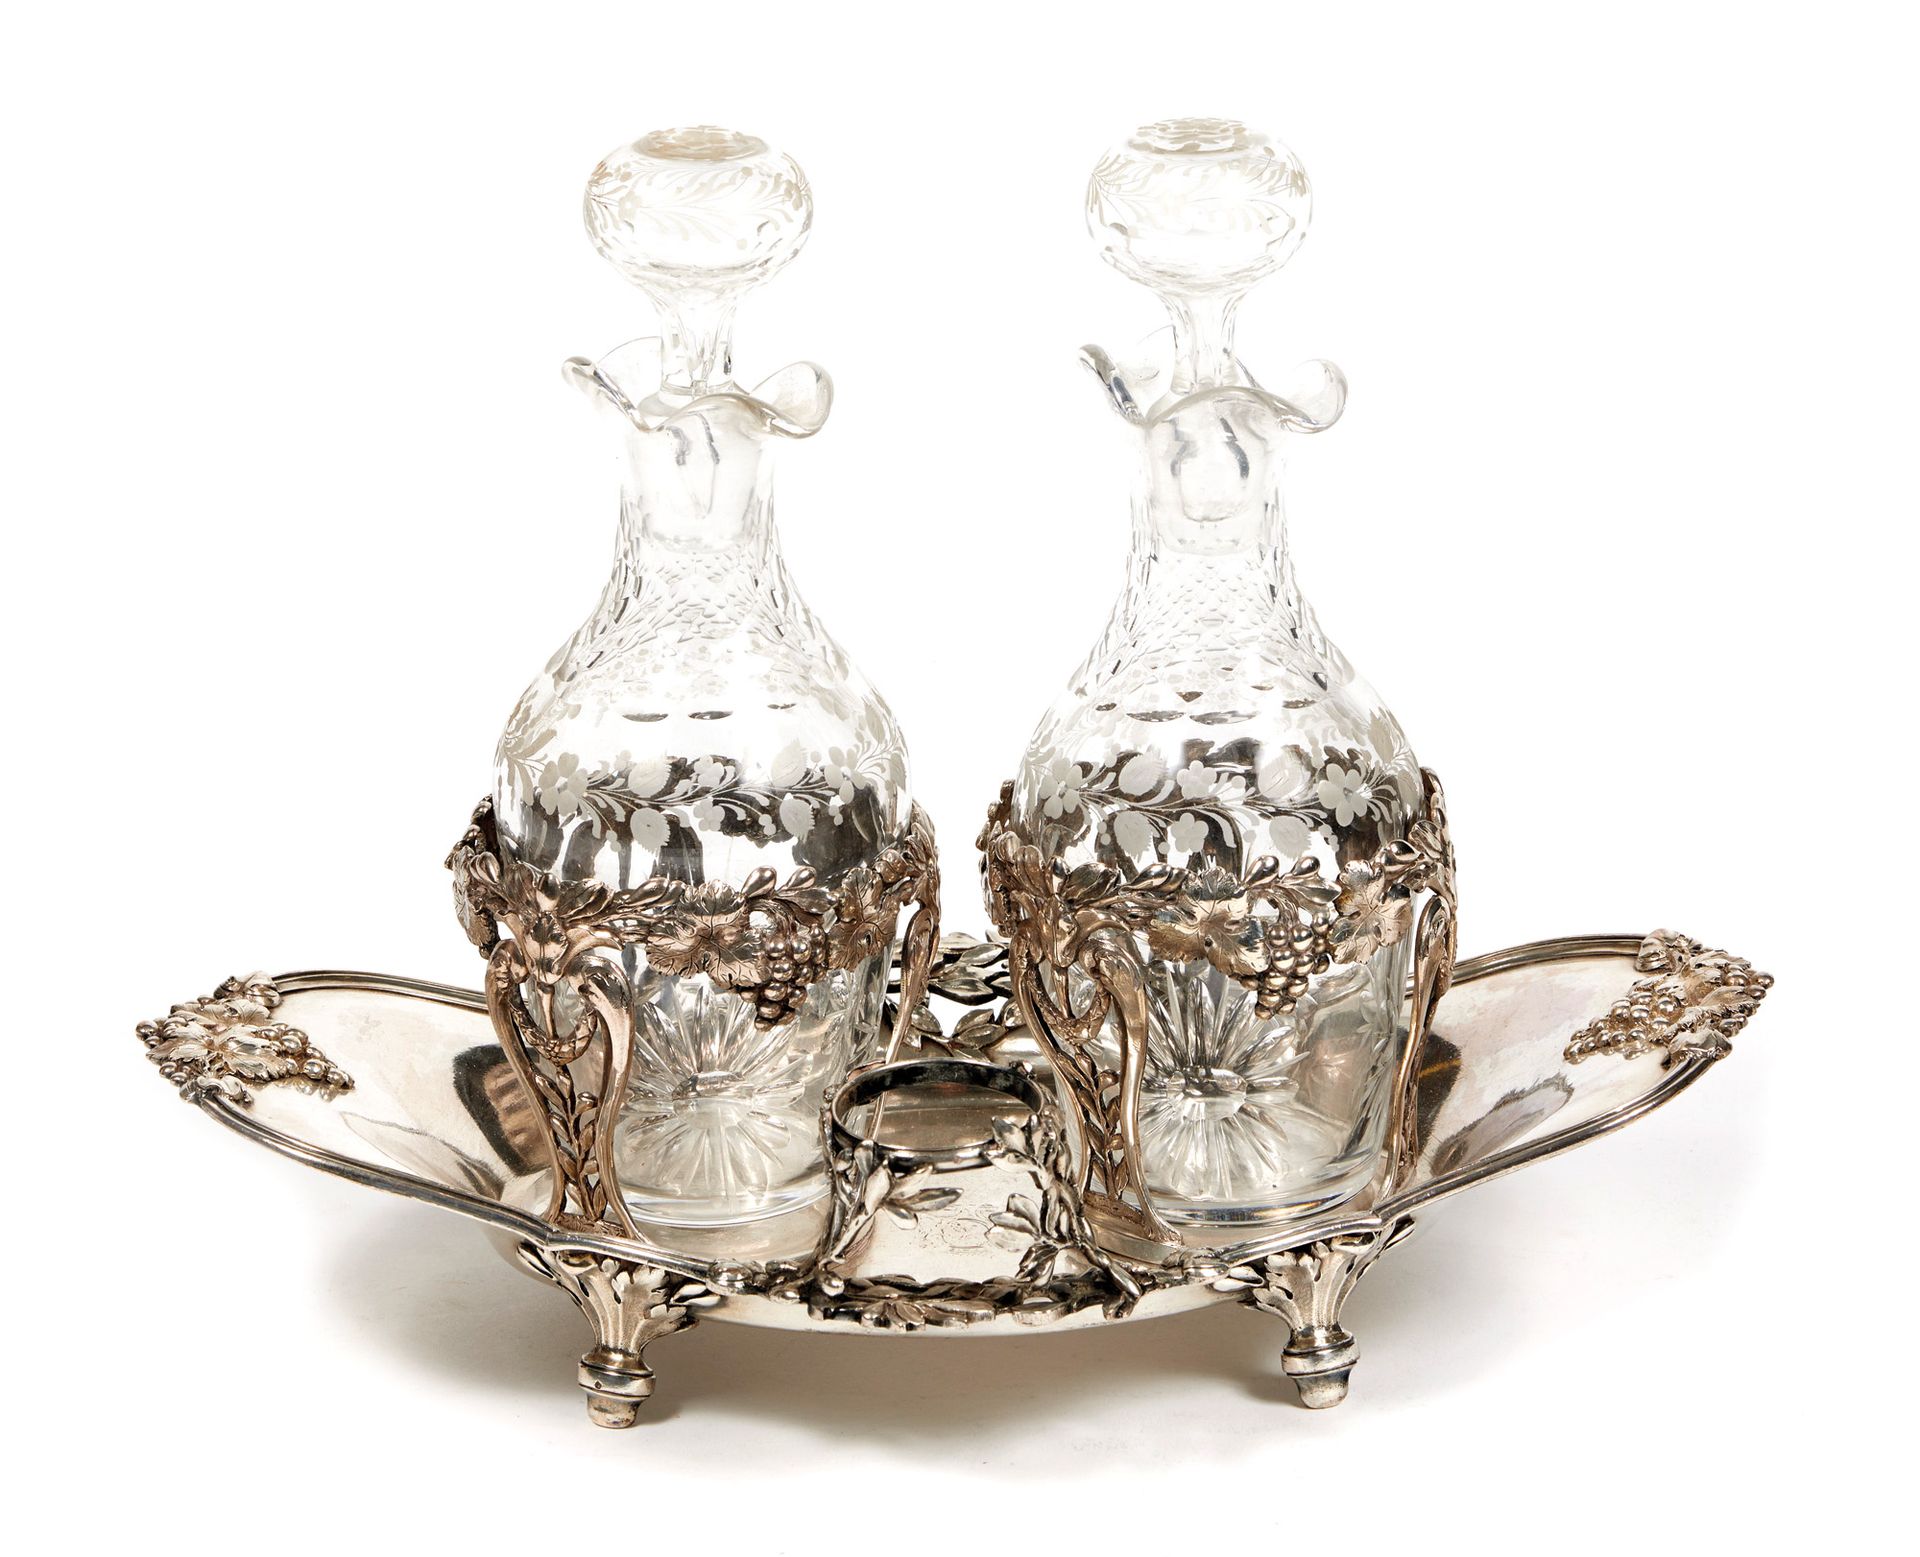 Huilier en argent et verre Ölkännchen aus Silber und Glas 

Von Antoine Boullier&hellip;